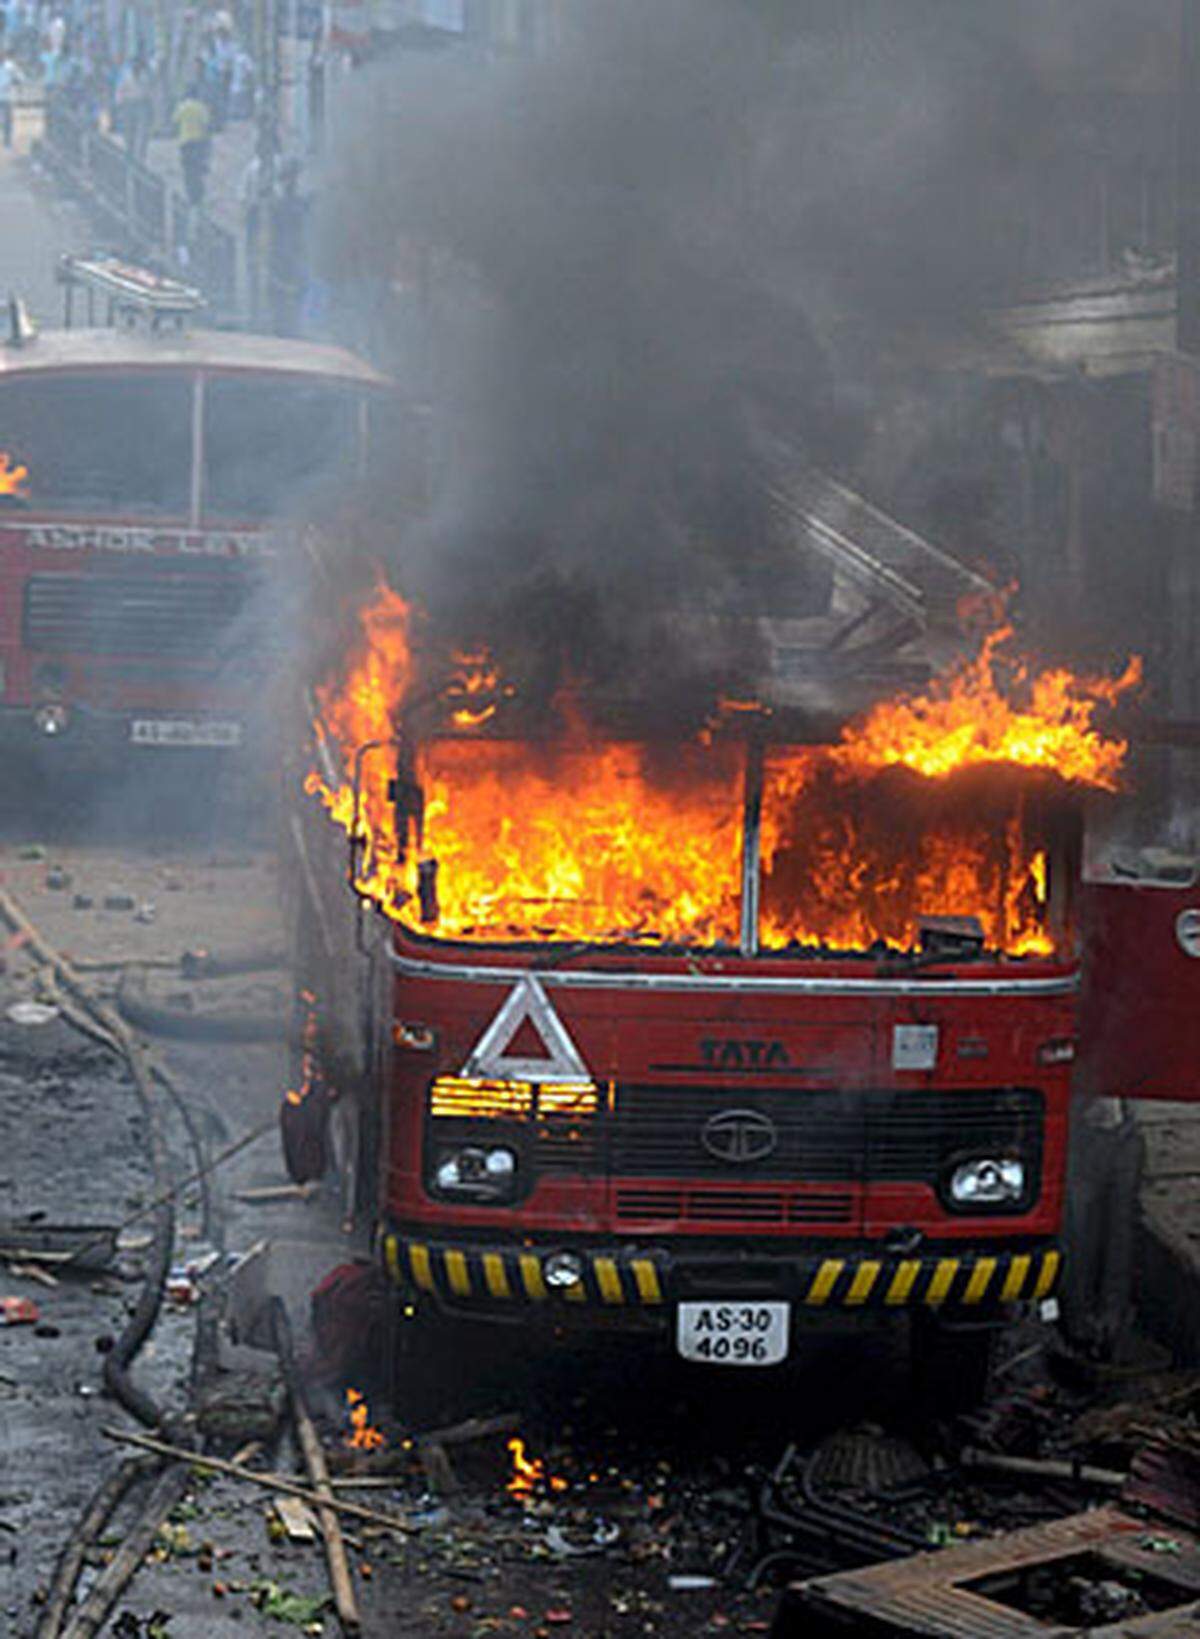 Bei der bisher schwersten Bombenserie im Nordosten Indiens sterben im Unionsstaat Assam mehr als 80 Menschen. Sicherheitskräfte vermuten Separatisten und muslimische Extremistengruppe hinter dem Anschlag.